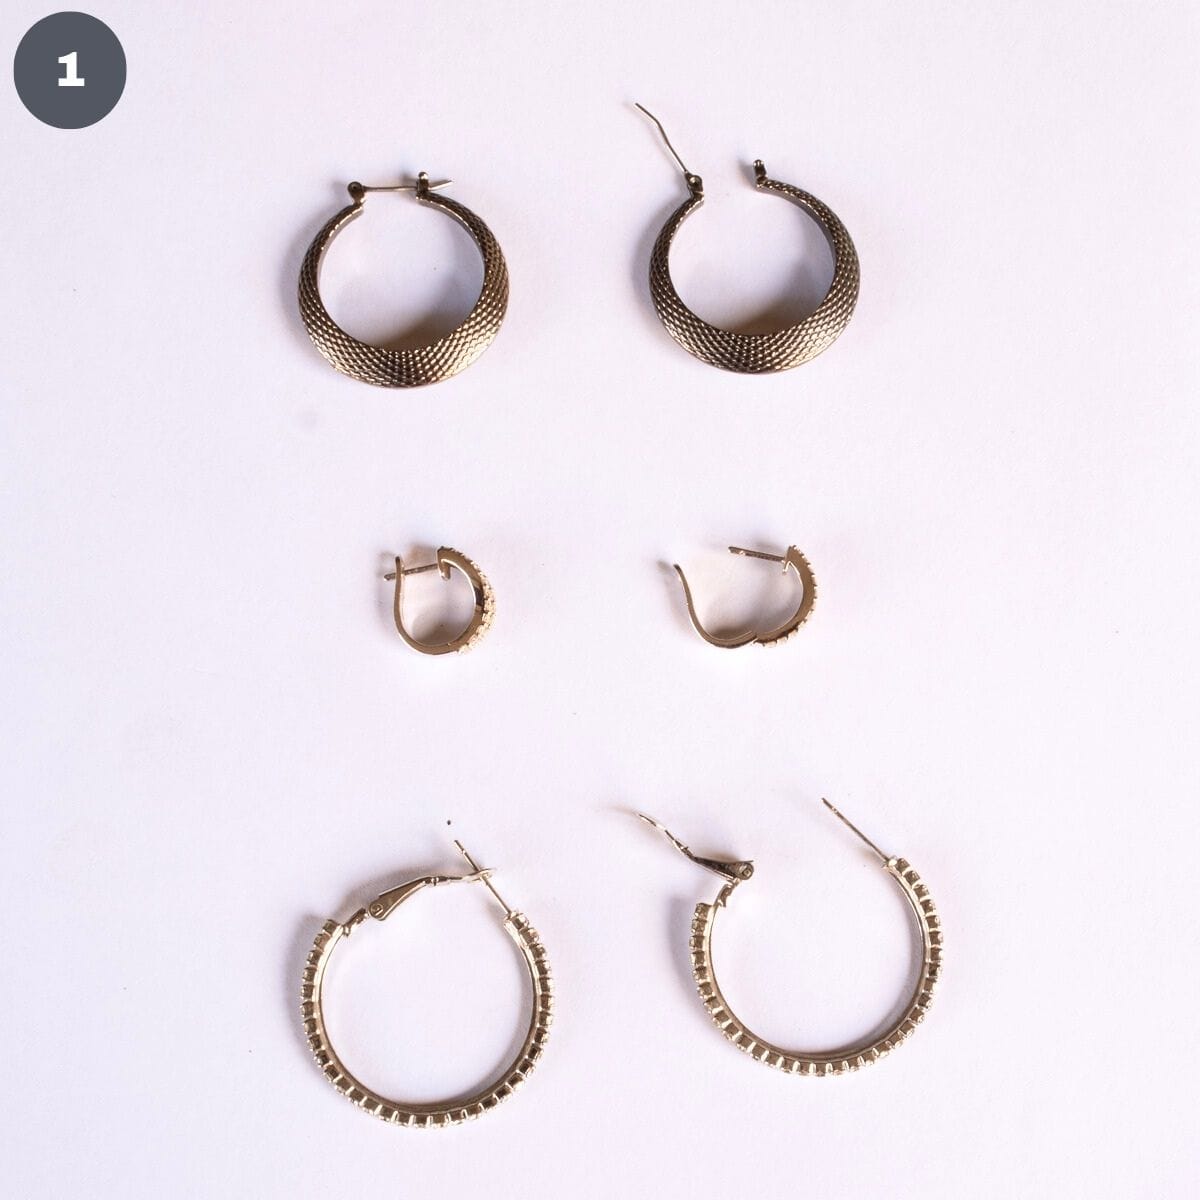 3 pairs of hoop earrings.